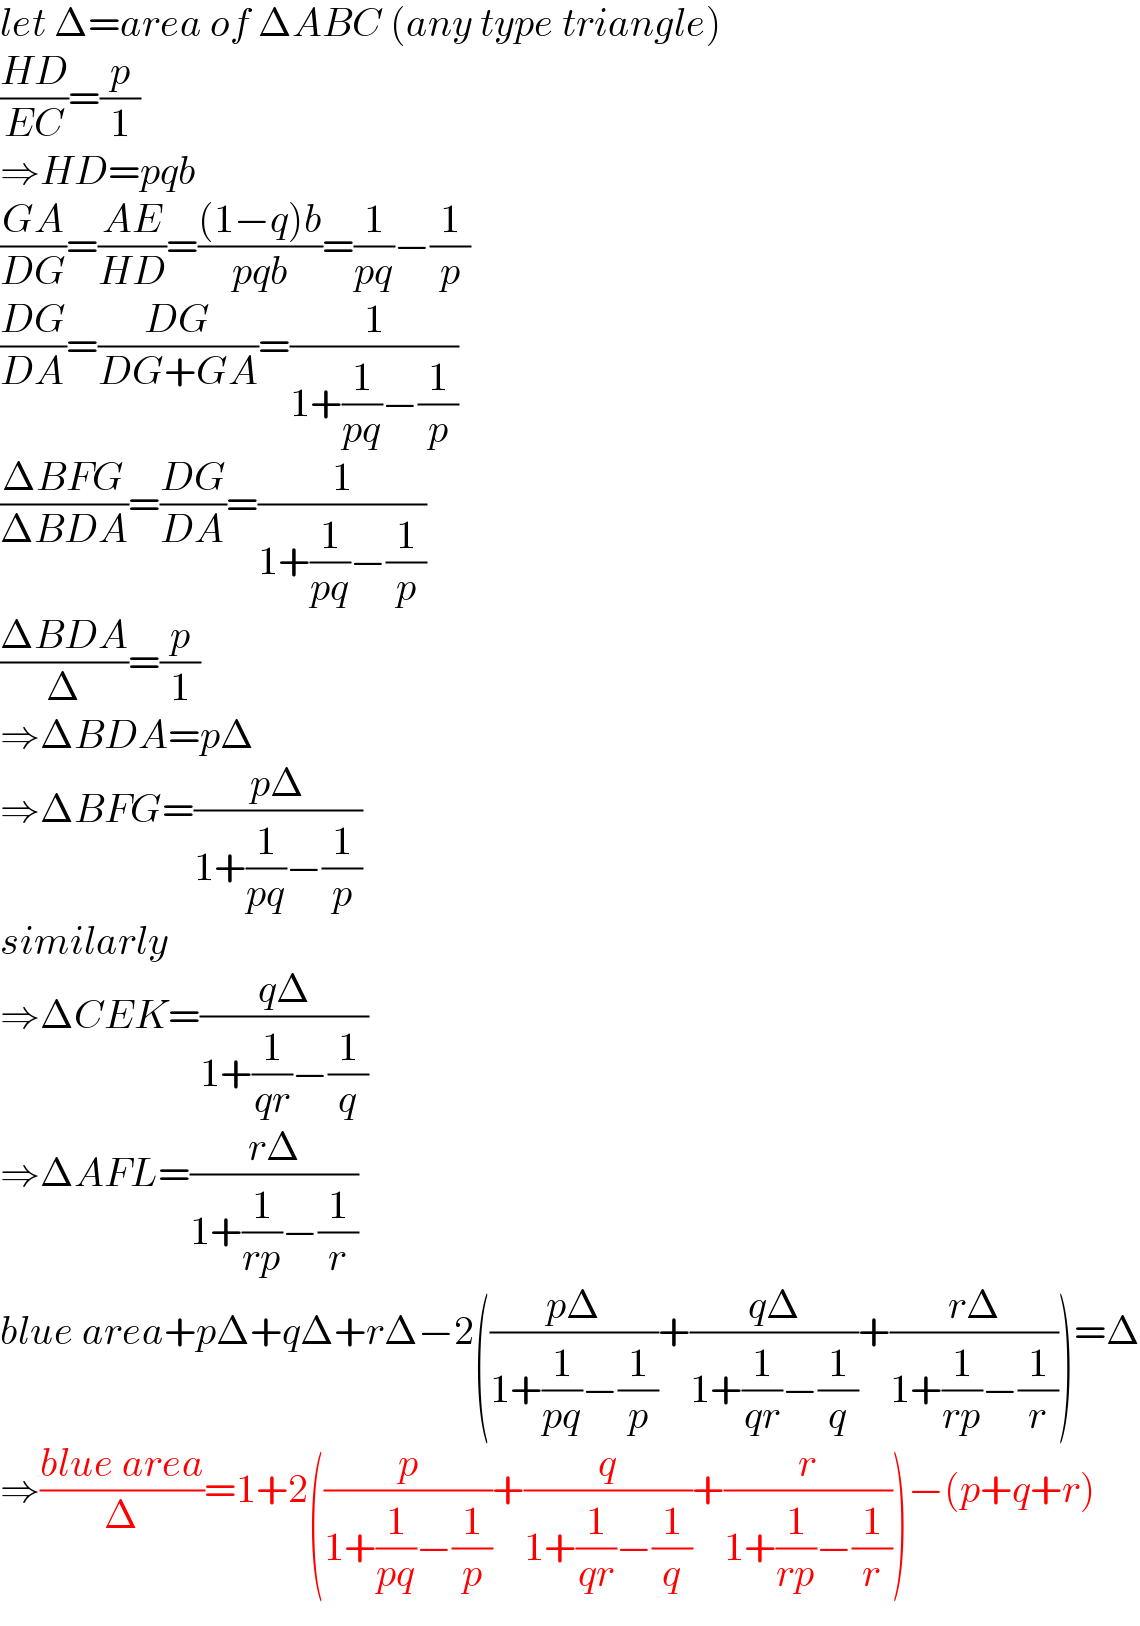 let Δ=area of ΔABC (any type triangle)  ((HD)/(EC))=(p/1)  ⇒HD=pqb  ((GA)/(DG))=((AE)/(HD))=(((1−q)b)/(pqb))=(1/(pq))−(1/p)  ((DG)/(DA))=((DG)/(DG+GA))=(1/(1+(1/(pq))−(1/p)))  ((ΔBFG)/(ΔBDA))=((DG)/(DA))=(1/(1+(1/(pq))−(1/p)))  ((ΔBDA)/Δ)=(p/1)  ⇒ΔBDA=pΔ  ⇒ΔBFG=((pΔ)/(1+(1/(pq))−(1/p)))  similarly  ⇒ΔCEK=((qΔ)/(1+(1/(qr))−(1/q)))  ⇒ΔAFL=((rΔ)/(1+(1/(rp))−(1/r)))  blue area+pΔ+qΔ+rΔ−2(((pΔ)/(1+(1/(pq))−(1/p)))+((qΔ)/(1+(1/(qr))−(1/q)))+((rΔ)/(1+(1/(rp))−(1/r))))=Δ  ⇒((blue area)/Δ)=1+2((p/(1+(1/(pq))−(1/p)))+(q/(1+(1/(qr))−(1/q)))+(r/(1+(1/(rp))−(1/r))))−(p+q+r)  